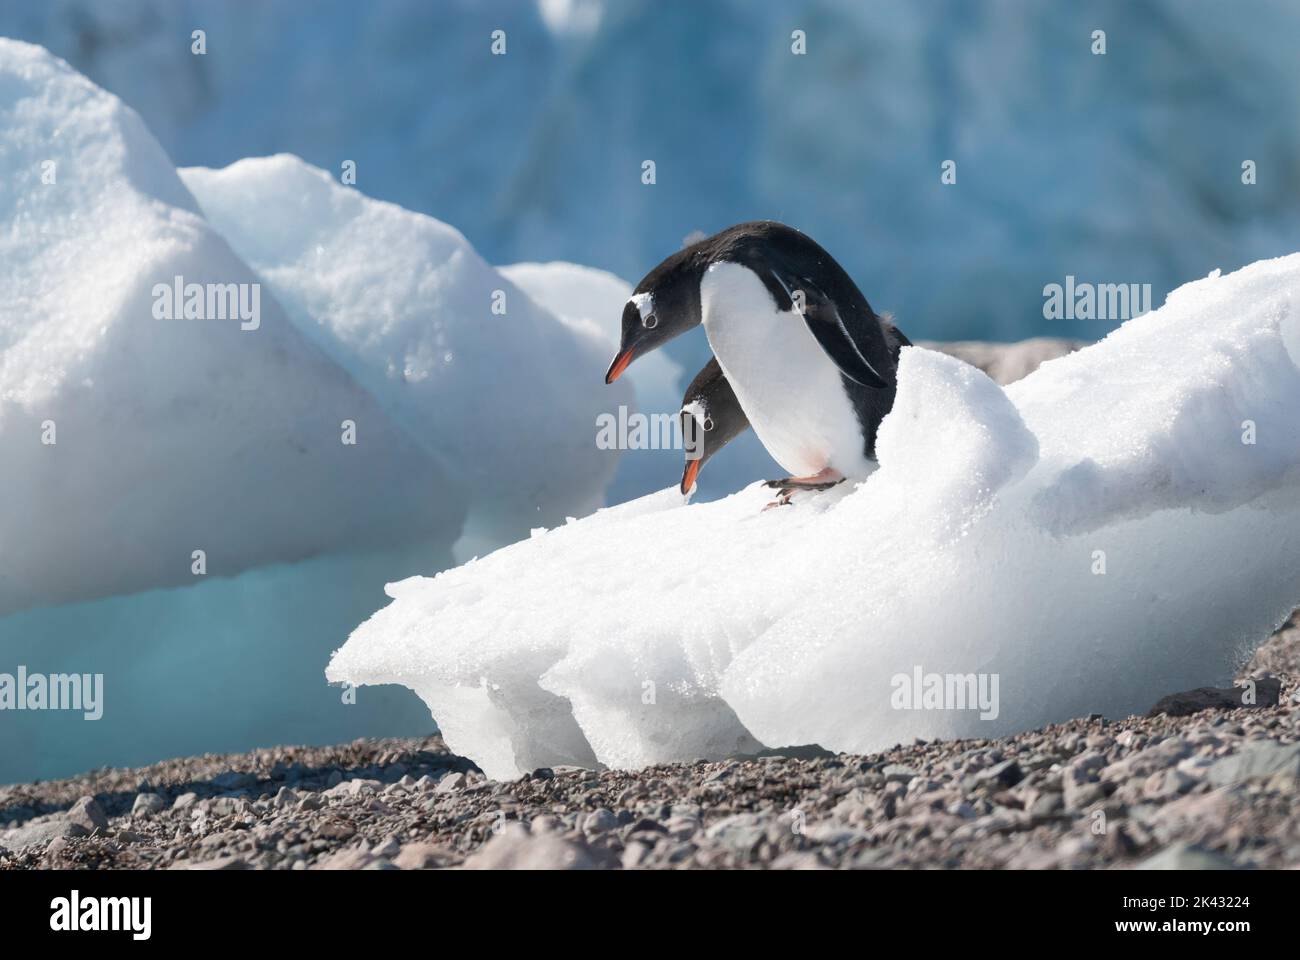 Gentoo pinguino due esemplari che battono le loro ali, la penisola antartica, Antartide. Foto Stock